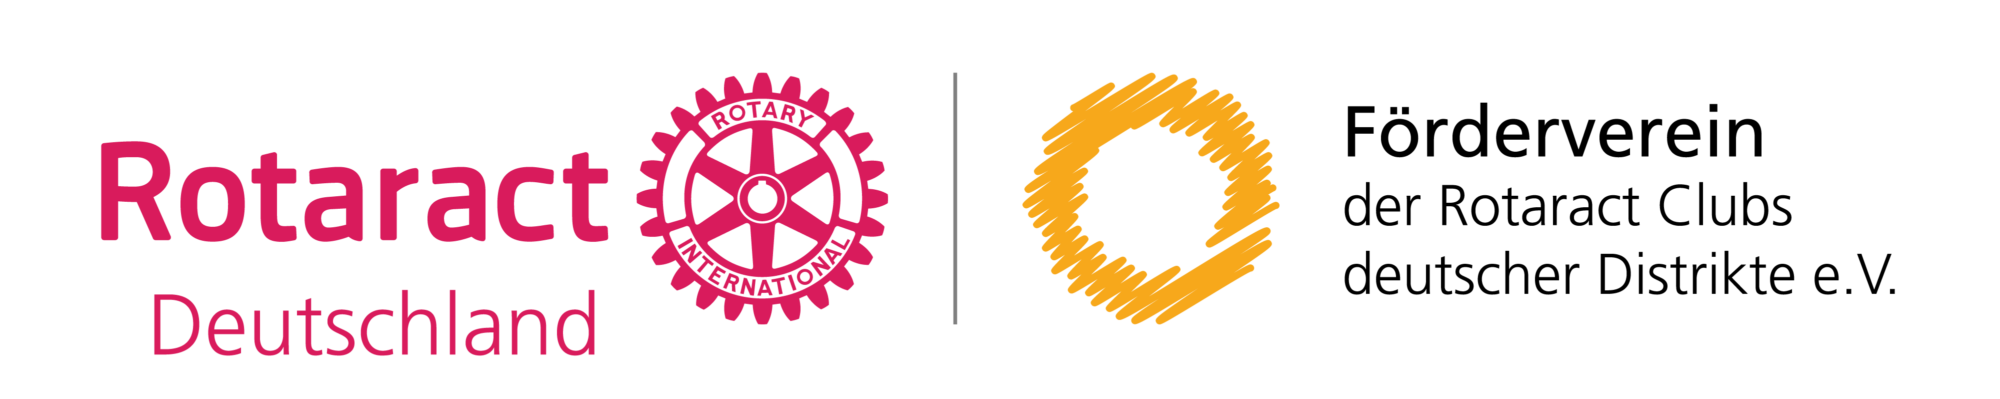 Förderverein der Rotaract Clubs deutscher Distrikte e.V.